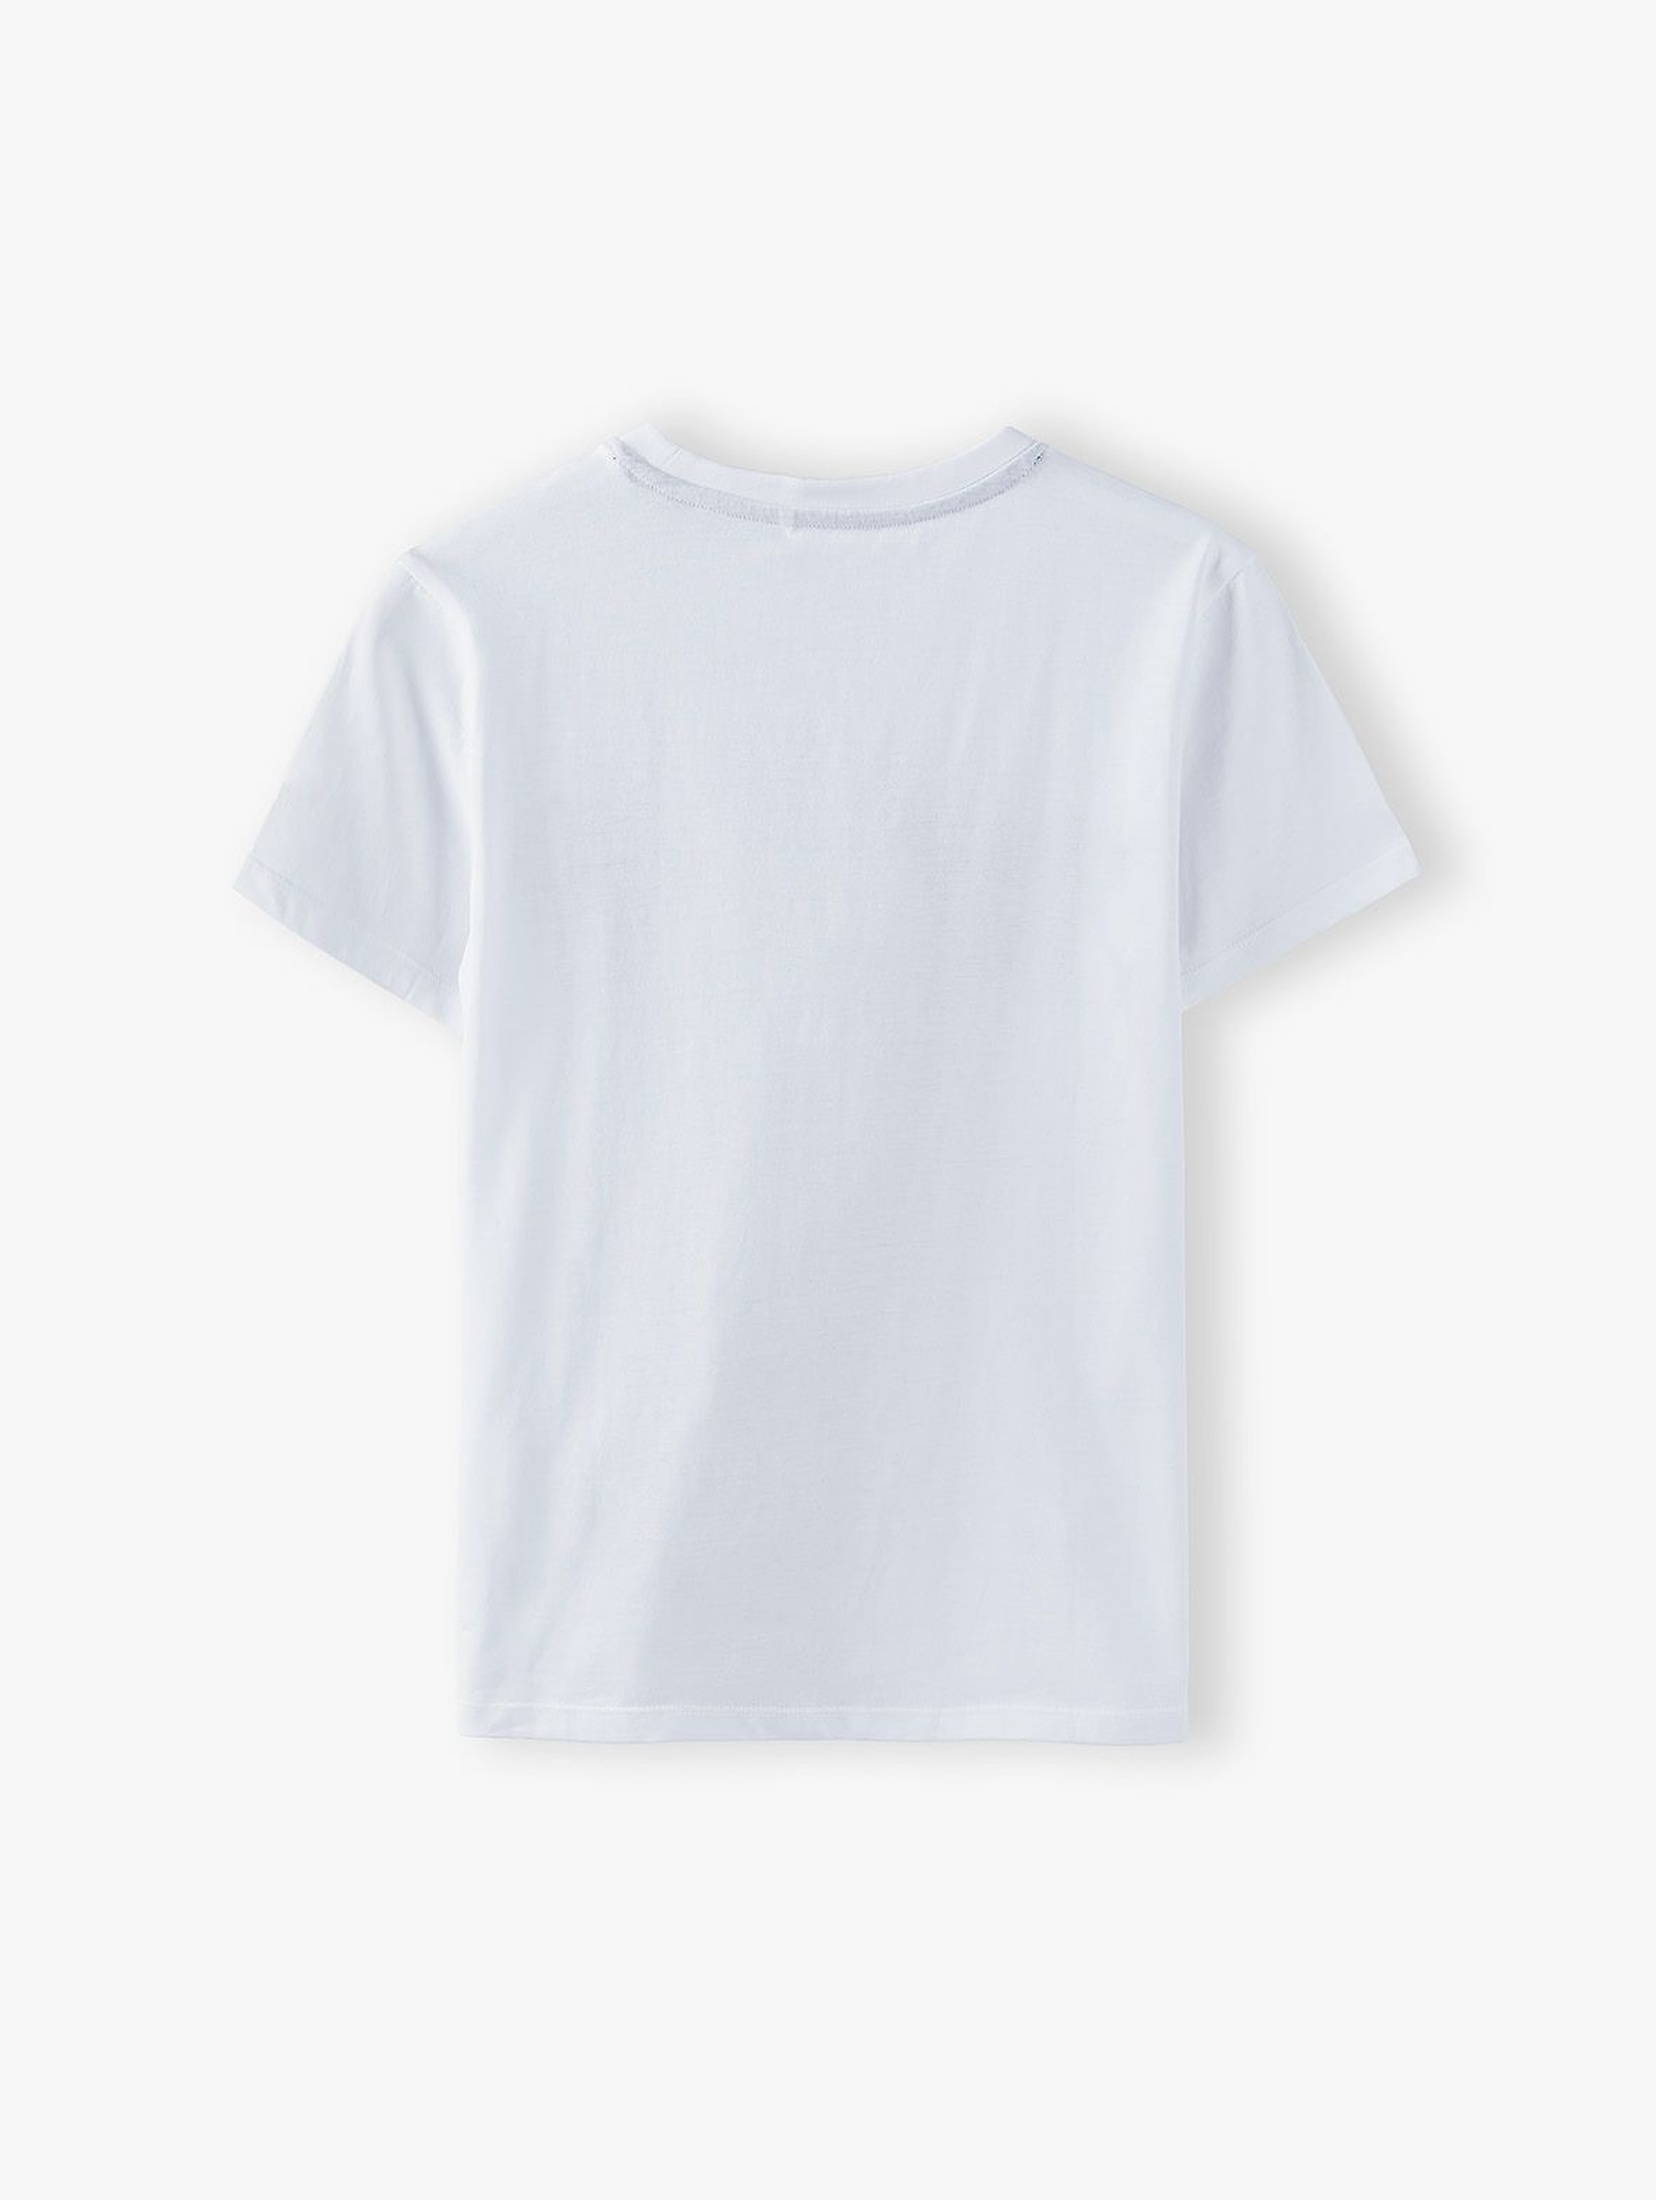 Bawełniany t-shirt chłopięcy biały z napisem- Playground